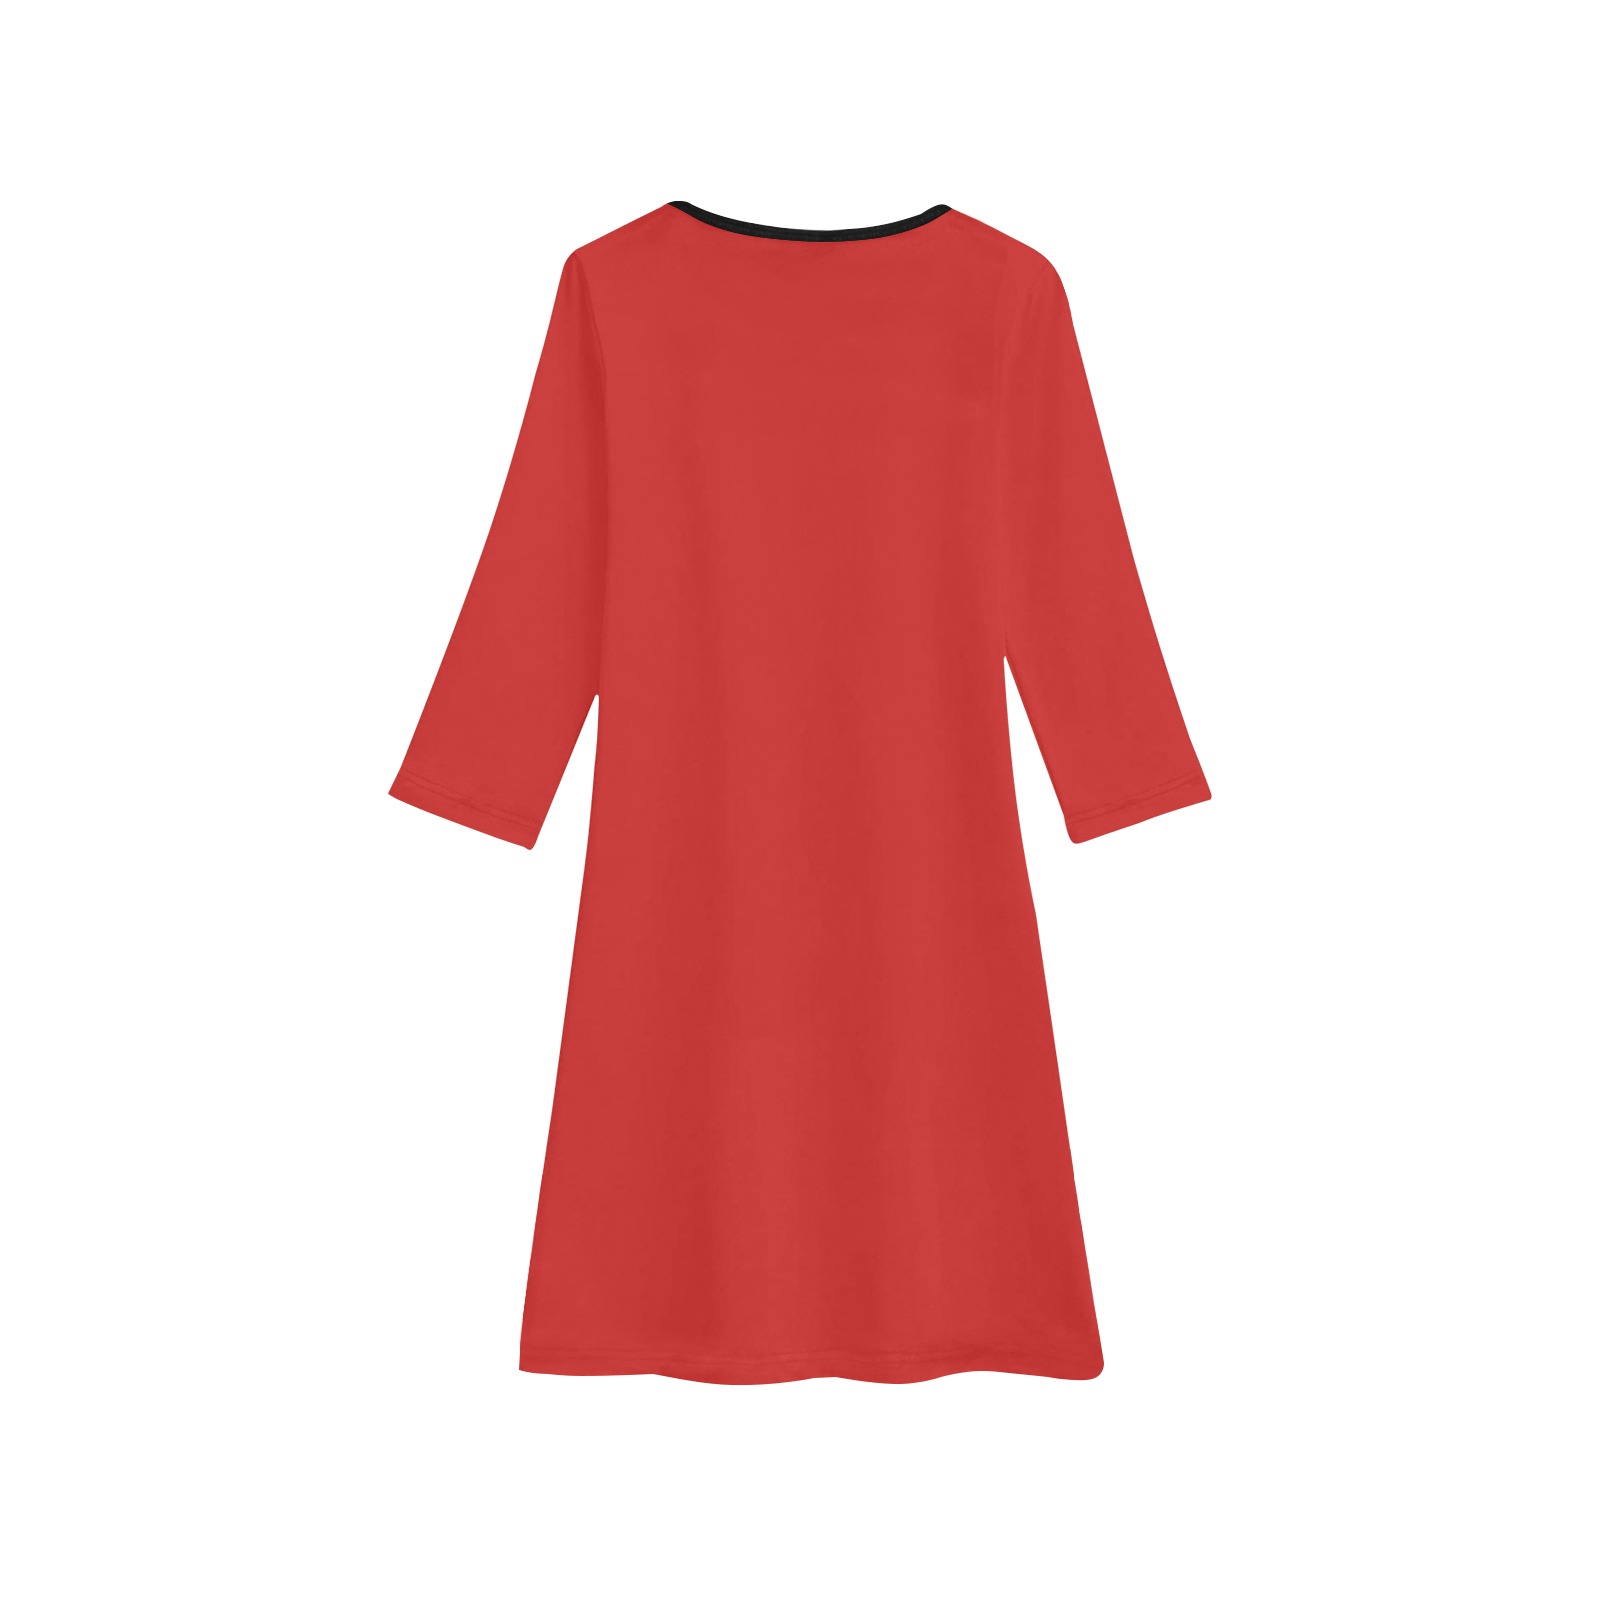 Foxy Roxy Red Girls' Long Sleeve Dress (Model D59)